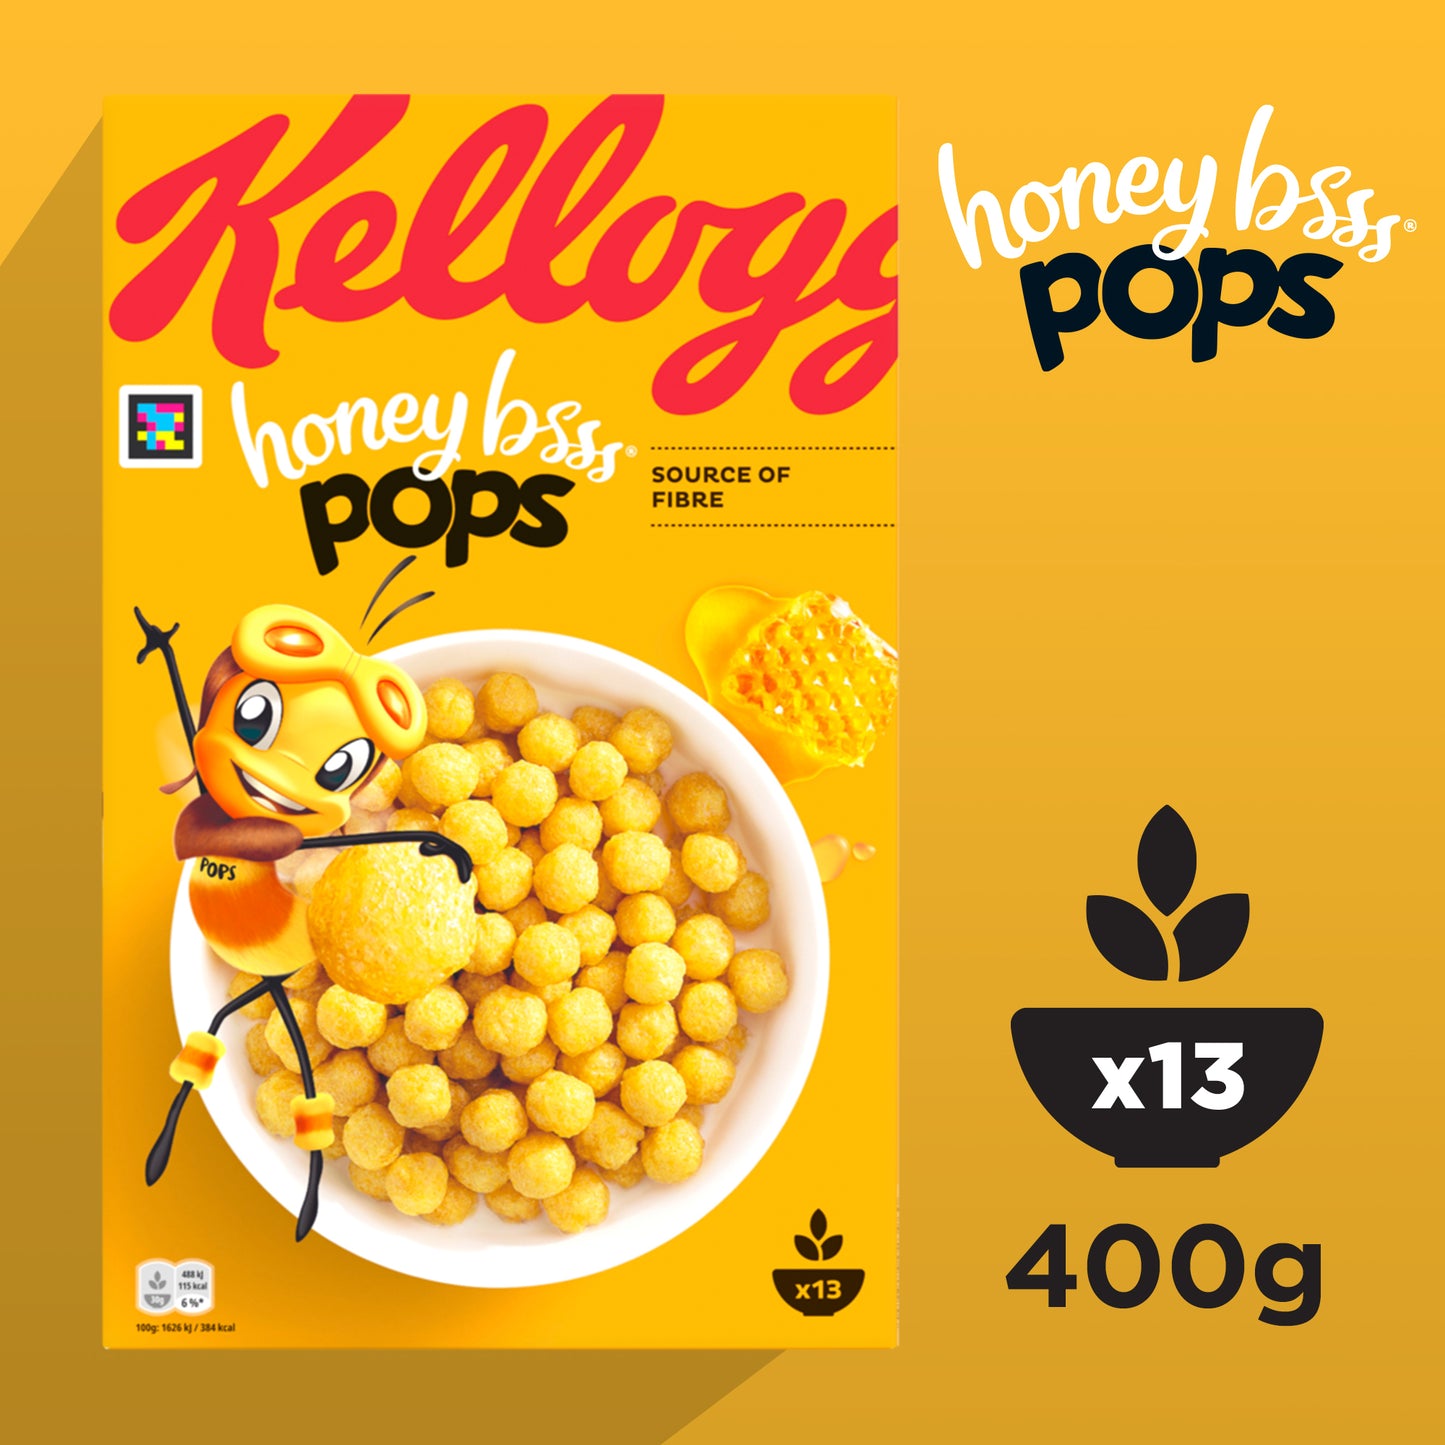 Kellogg's Honey Bsss Pops